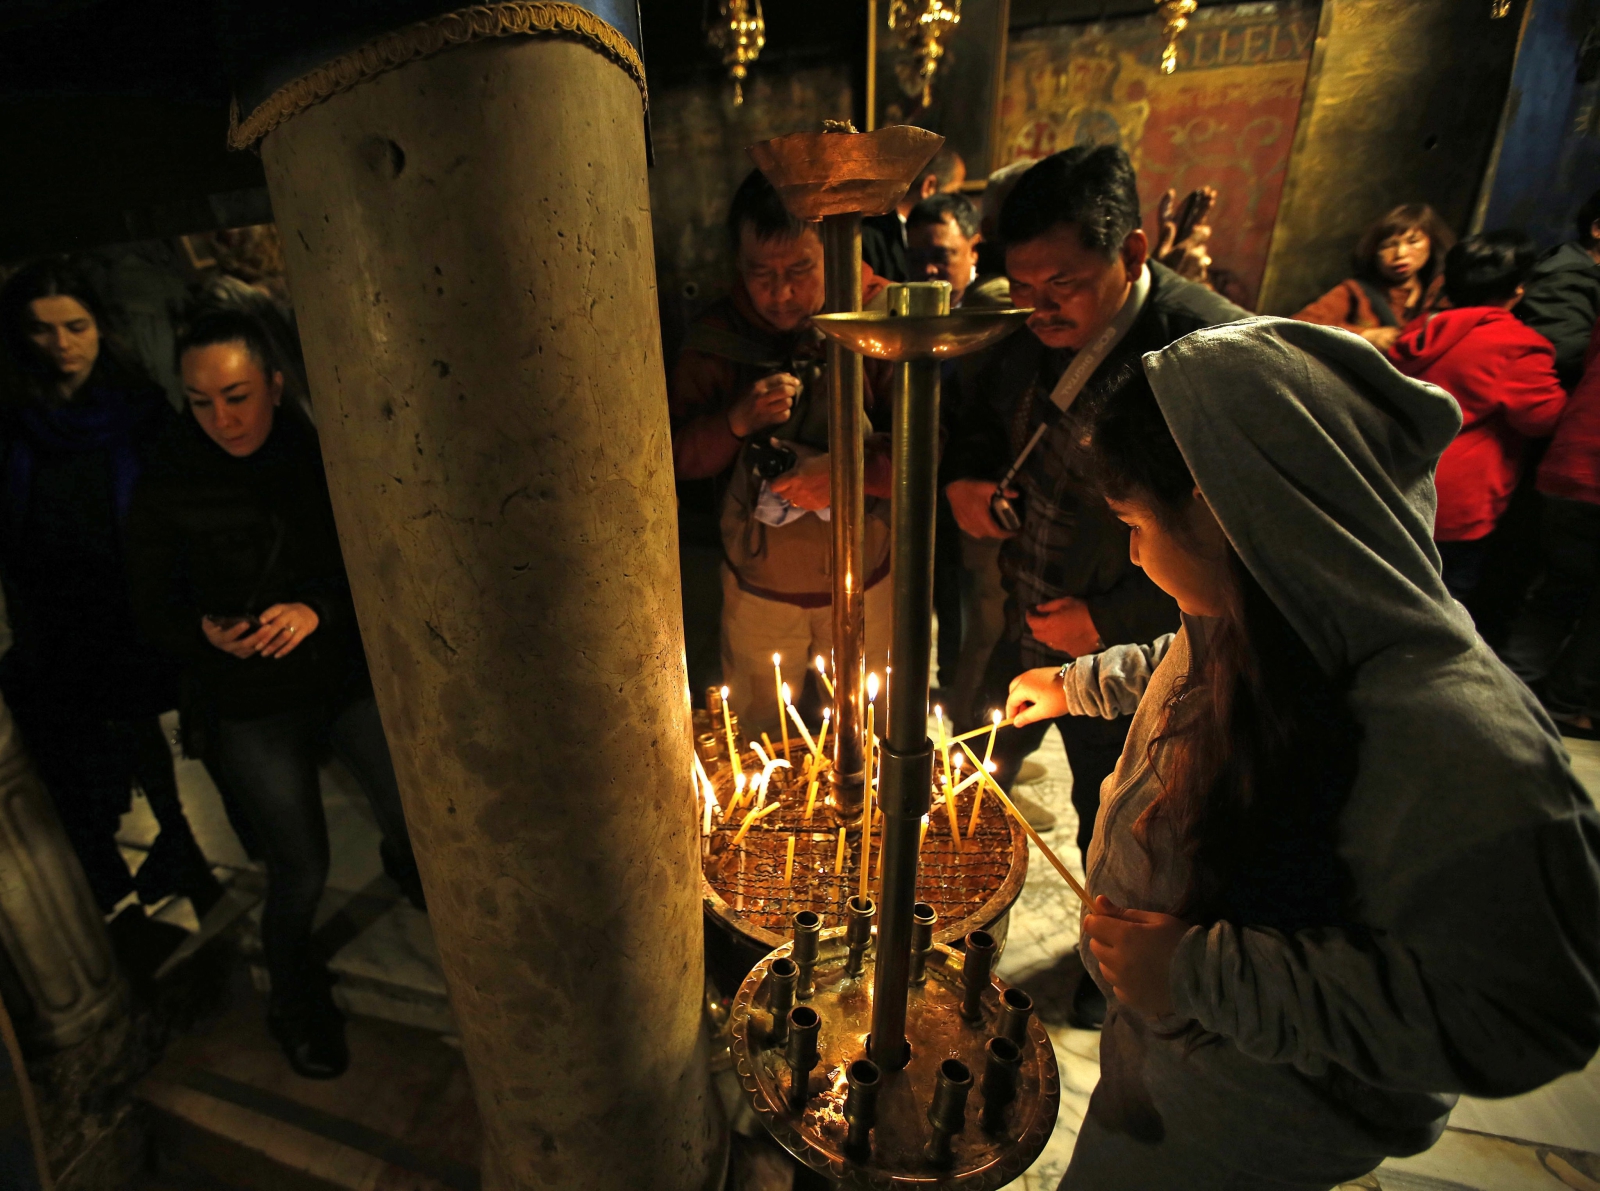 Pielgrzymi zapalają świece w Kościele Bożego Narodzenia w Betlejem. Kościół ten, jeden z najstarszych na świecie jest ciągle w remoncie, cały pokryty plastikiem i folią.